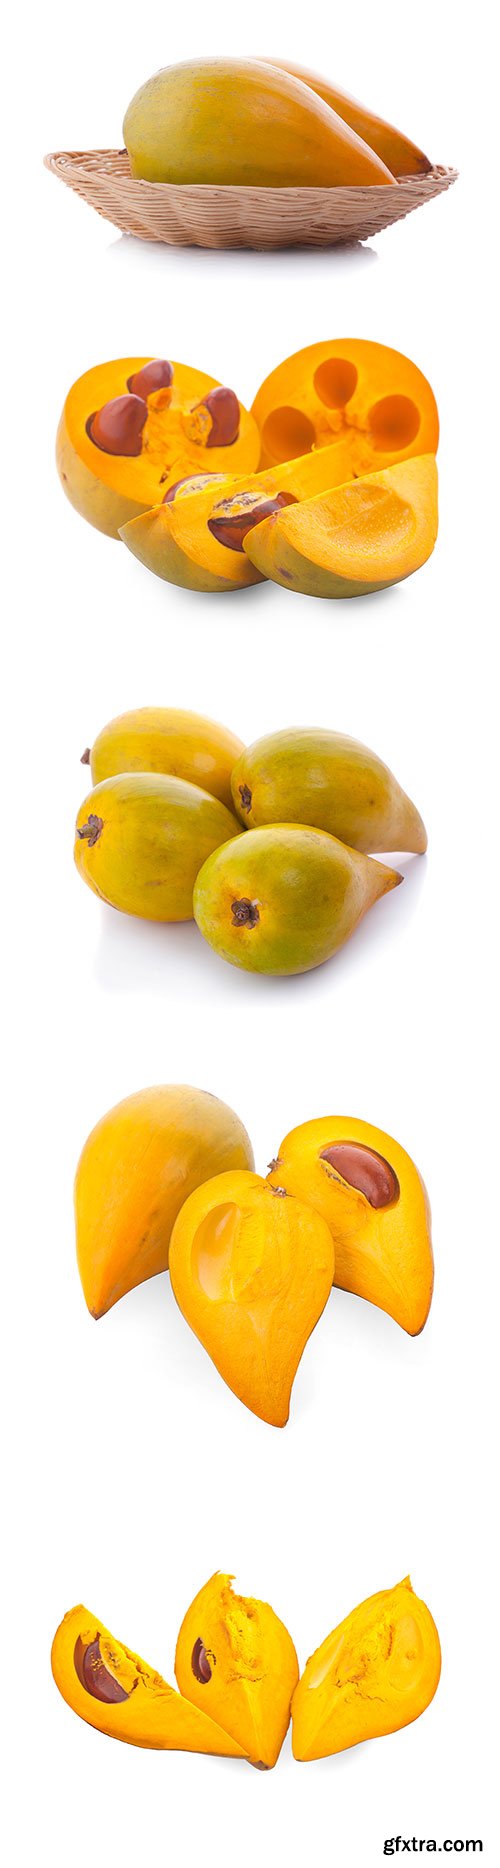 Photo - Egg Fruit Isolated - 10xJPGs